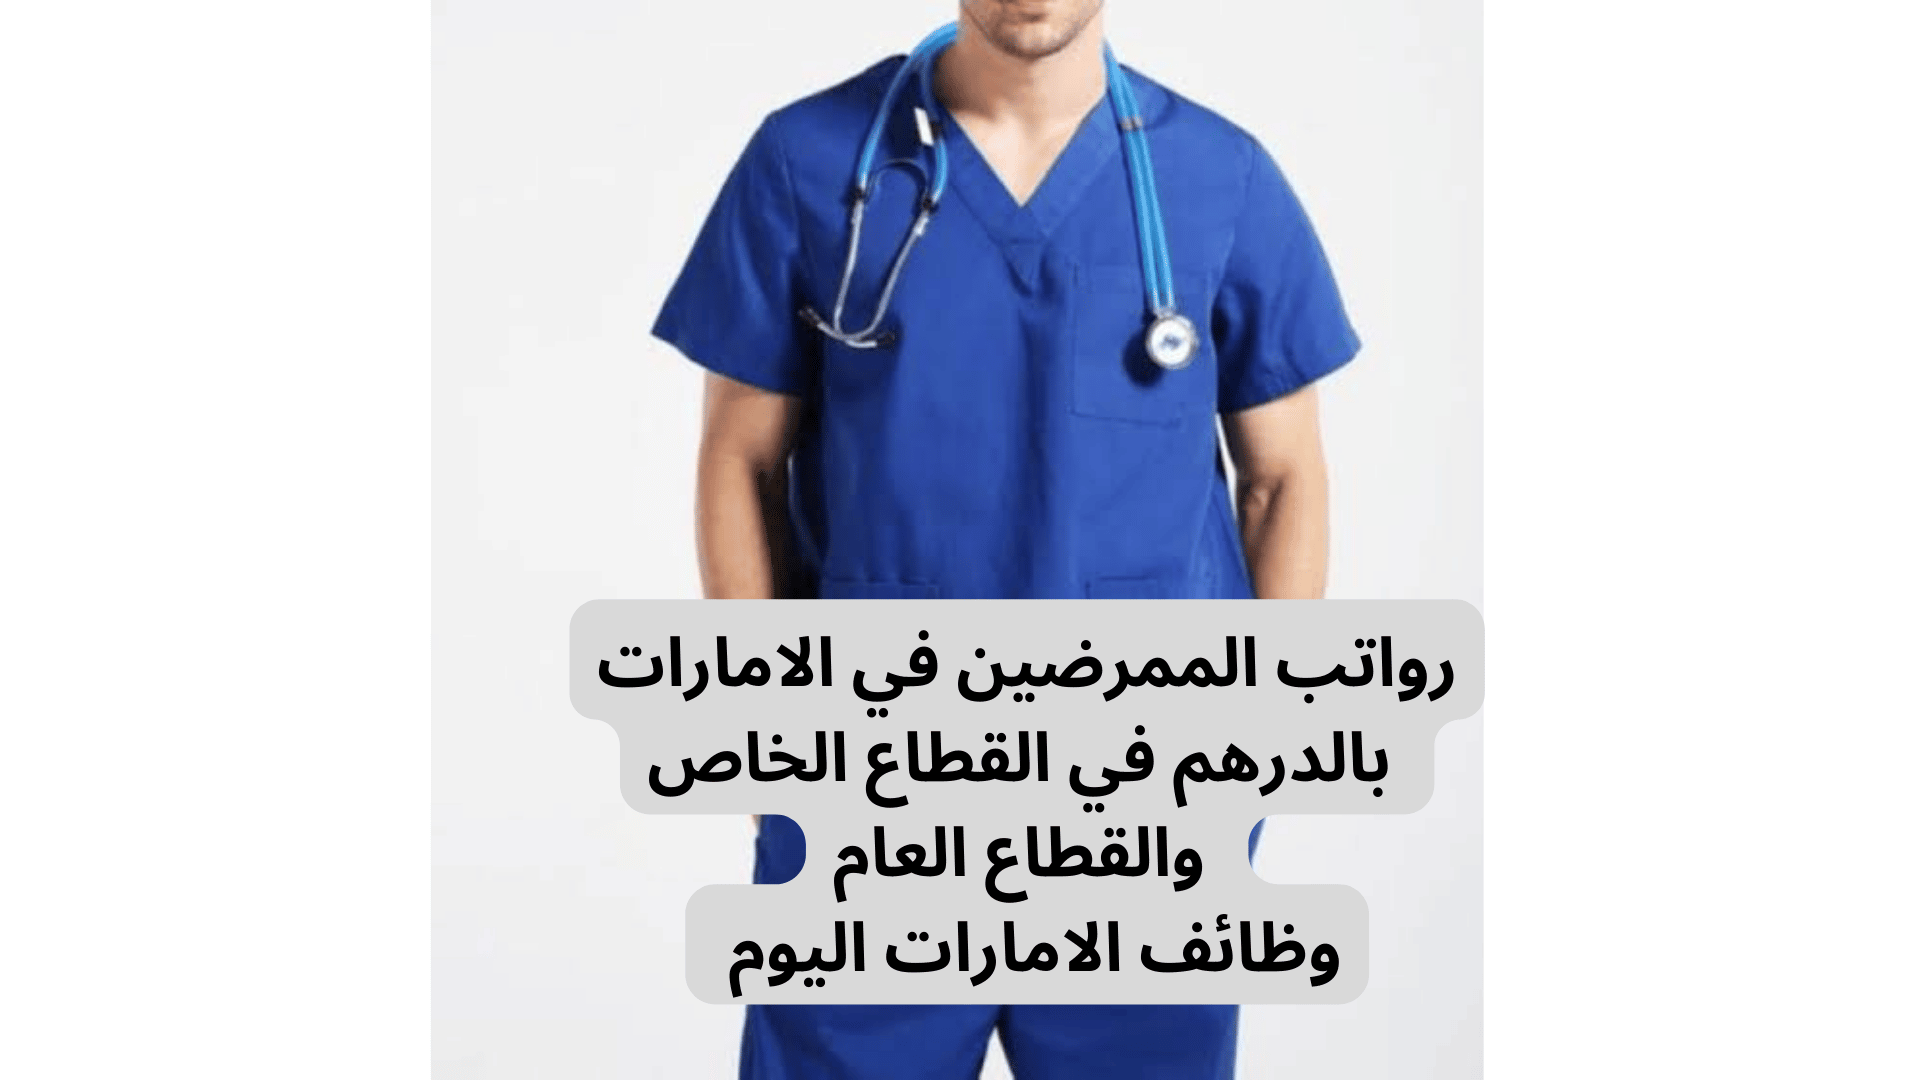 رواتب الممرضين في الامارات بالدرهم في القطاع الخاص والقطاع العام